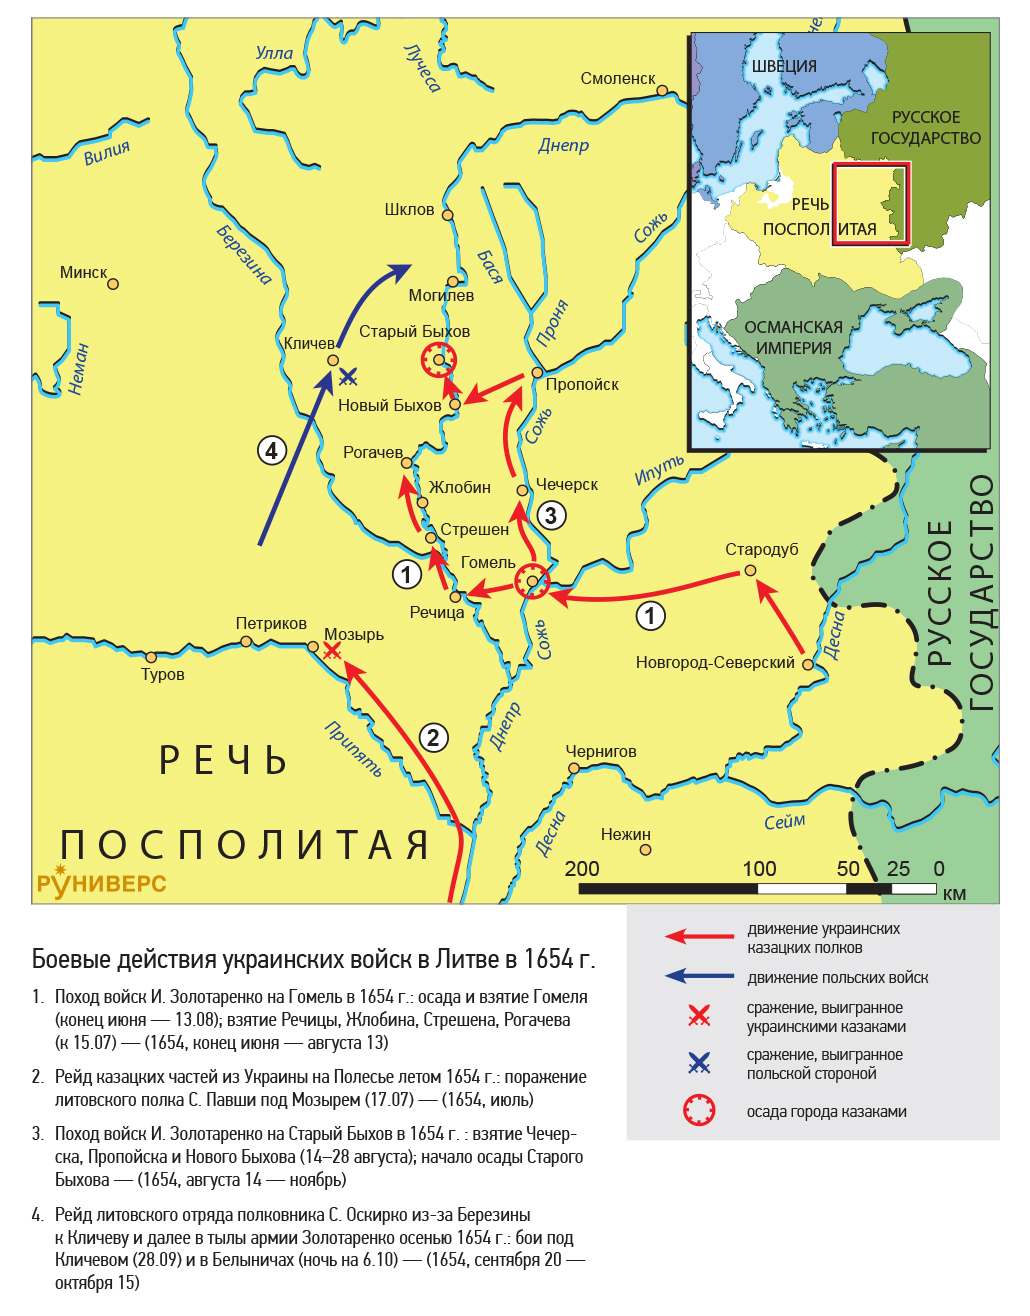 Русско-польская война 1654–1667 гг. Боевые действия украинских войск вЛитве в 1654 г.